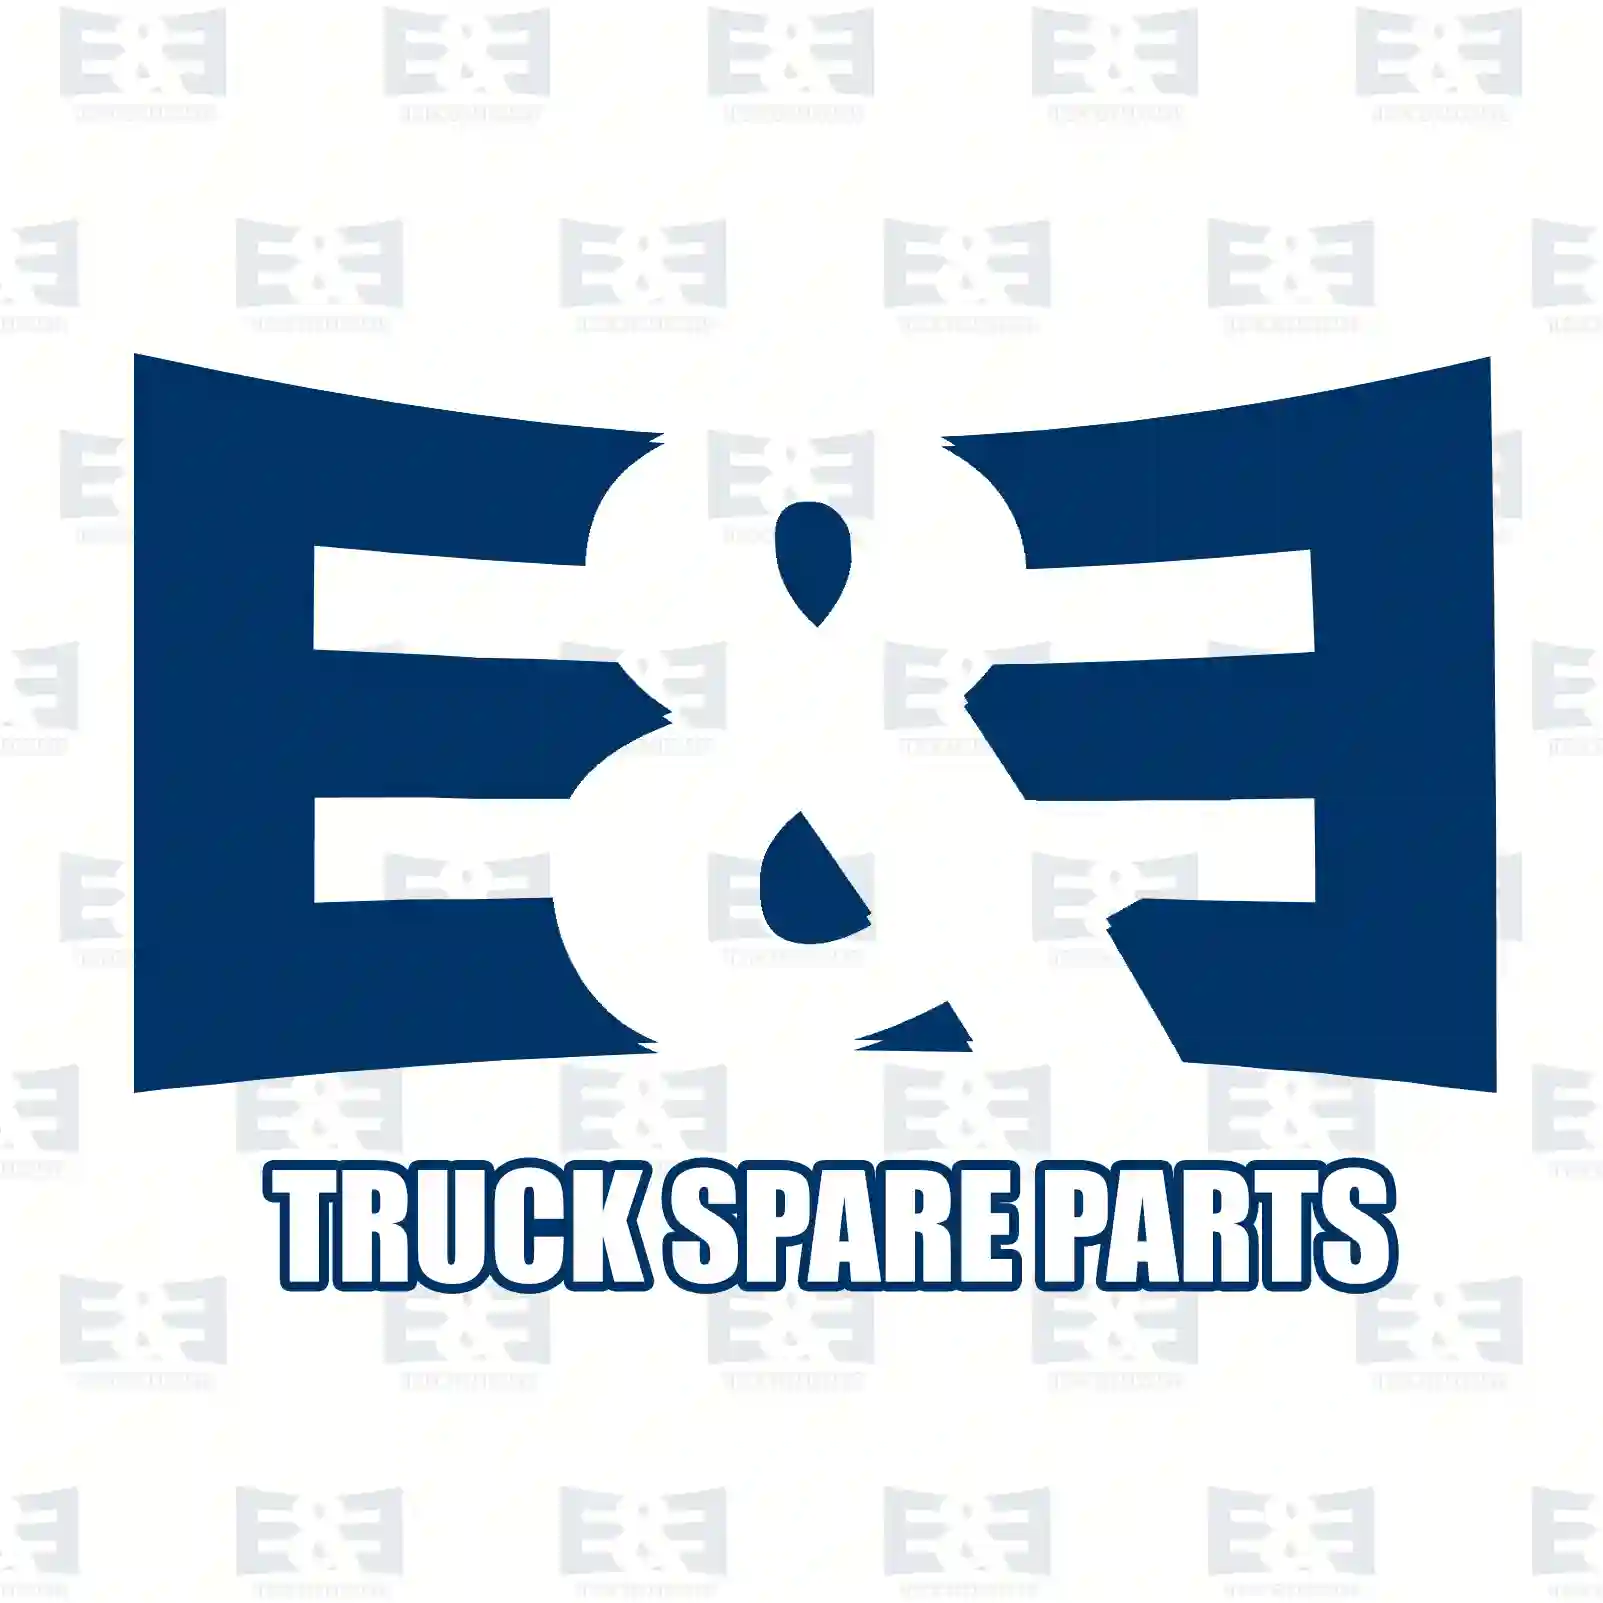 Screw, 2E2281595, 20467715, ZG41495-0008, , , ||  2E2281595 E&E Truck Spare Parts | Truck Spare Parts, Auotomotive Spare Parts Screw, 2E2281595, 20467715, ZG41495-0008, , , ||  2E2281595 E&E Truck Spare Parts | Truck Spare Parts, Auotomotive Spare Parts